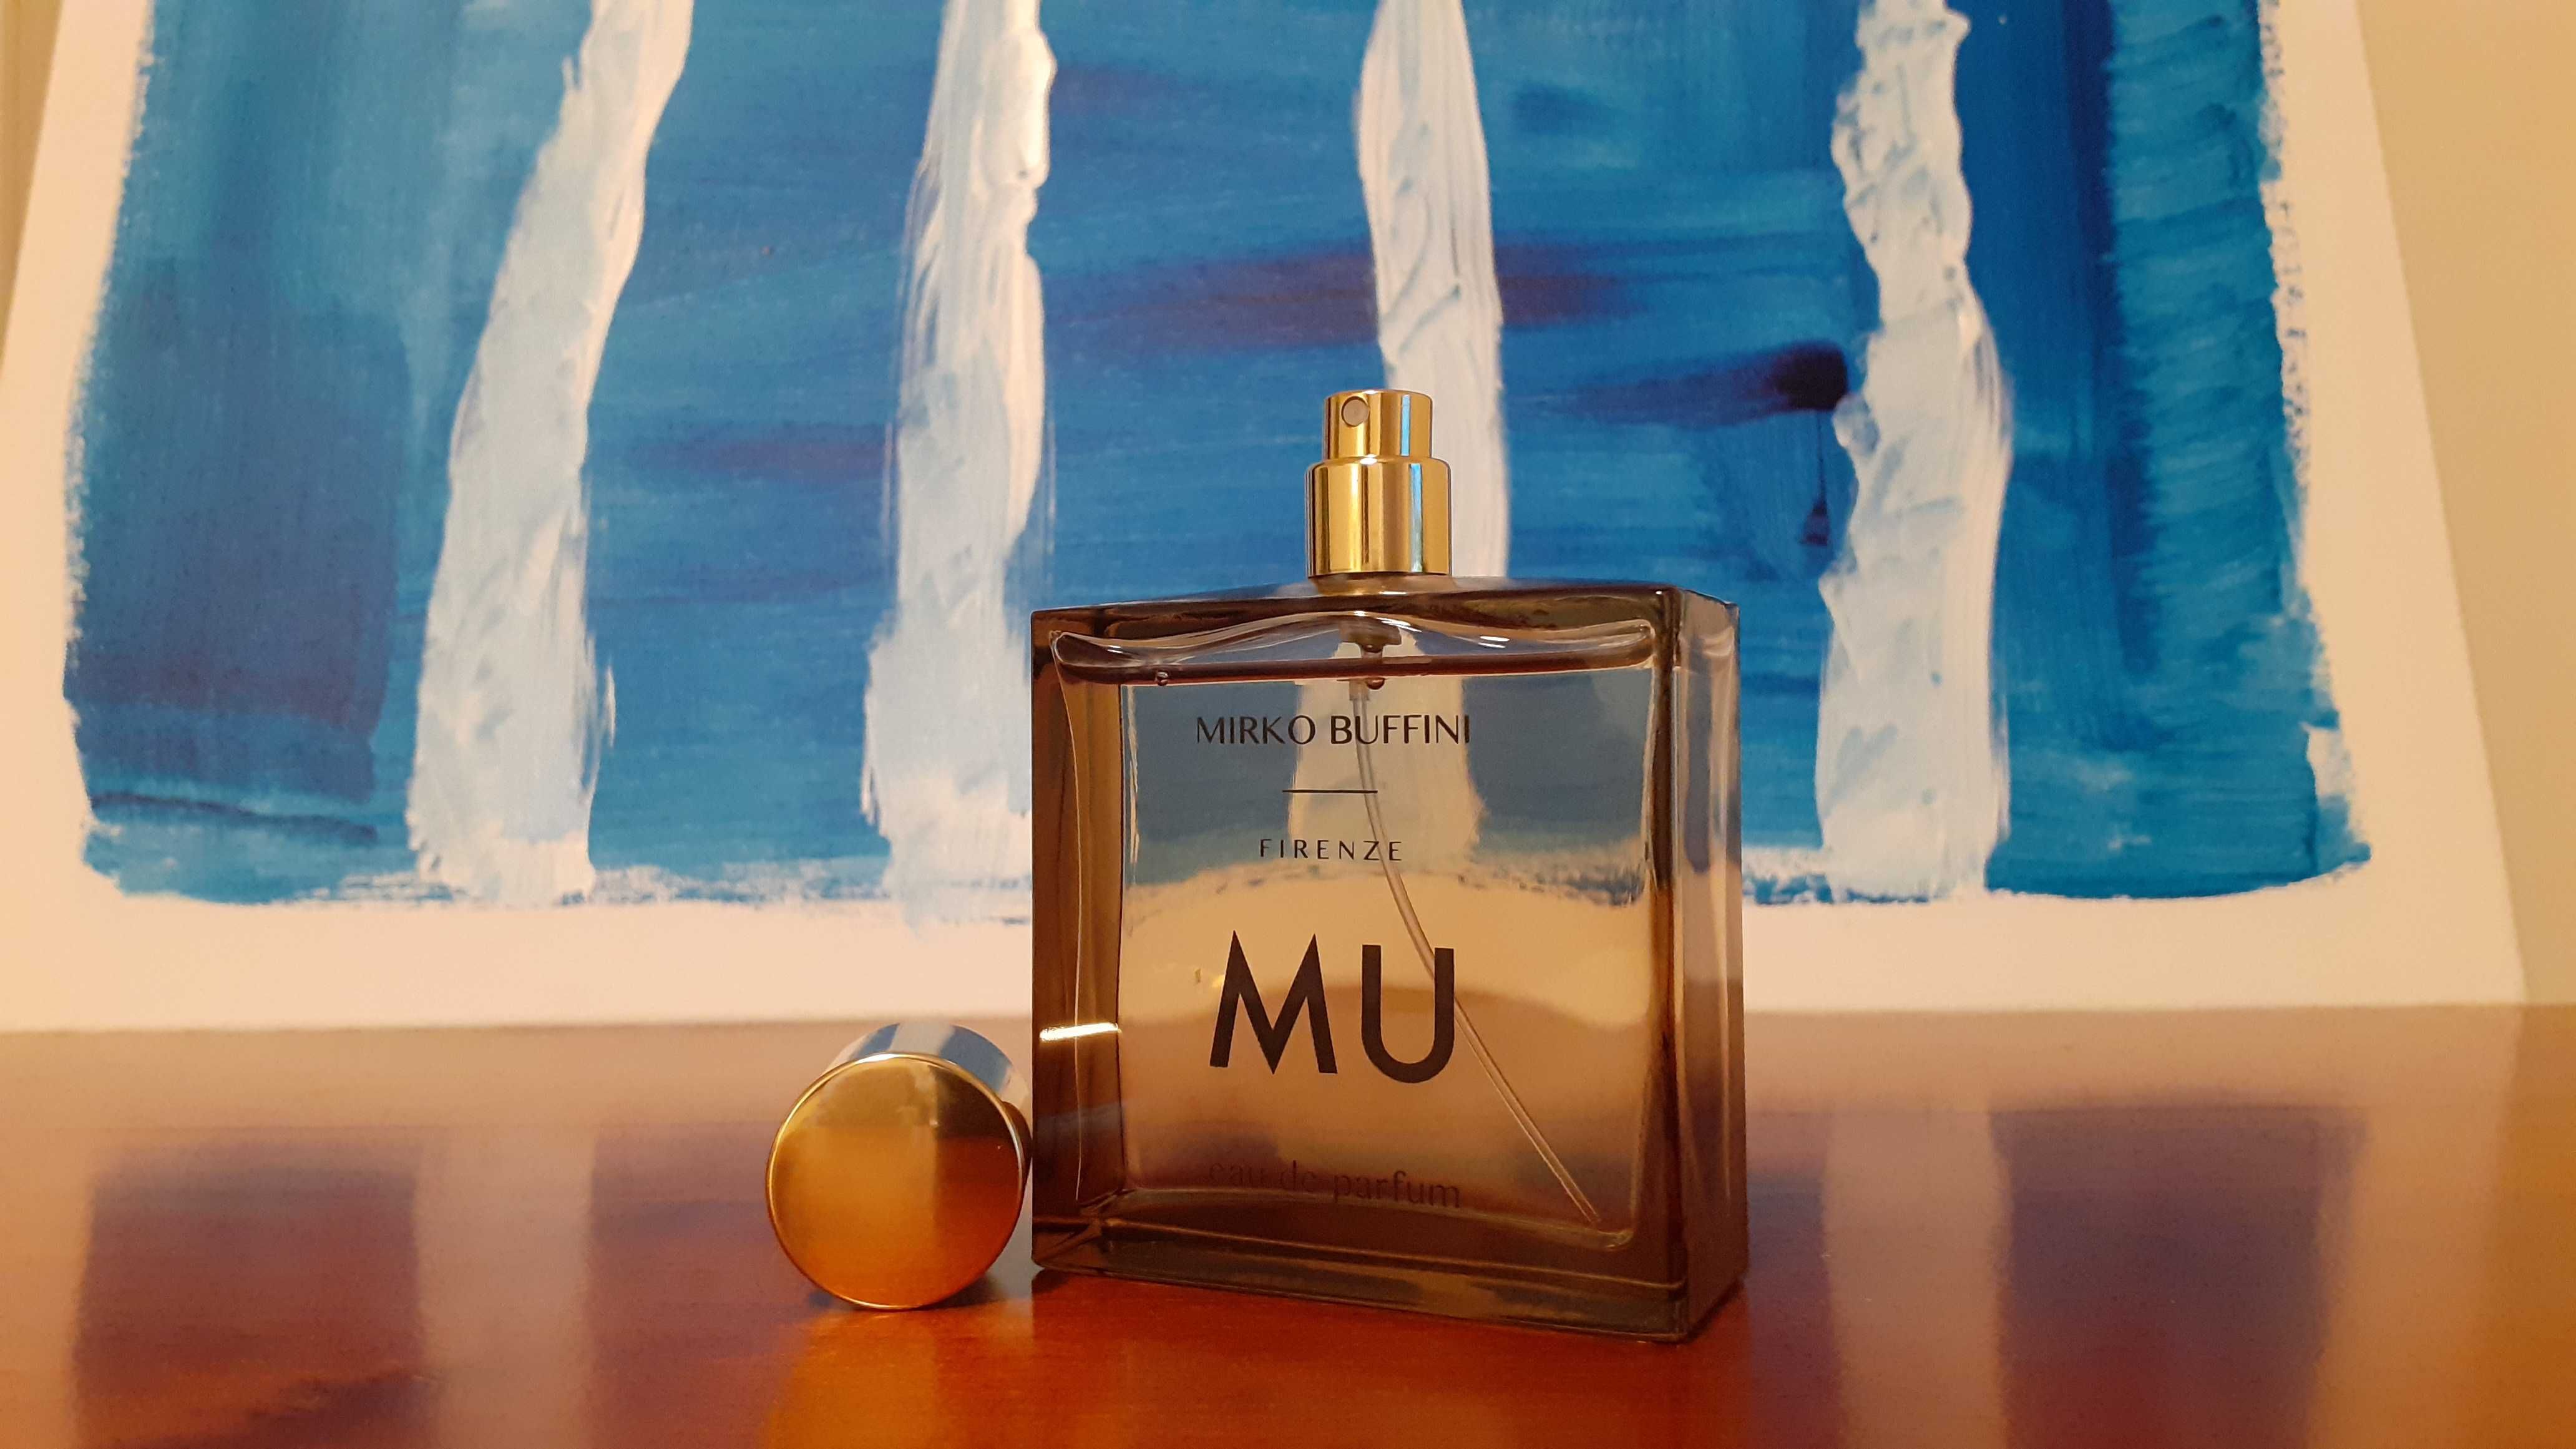 Perfumy	Mirko Buffini Mu - sprzedam